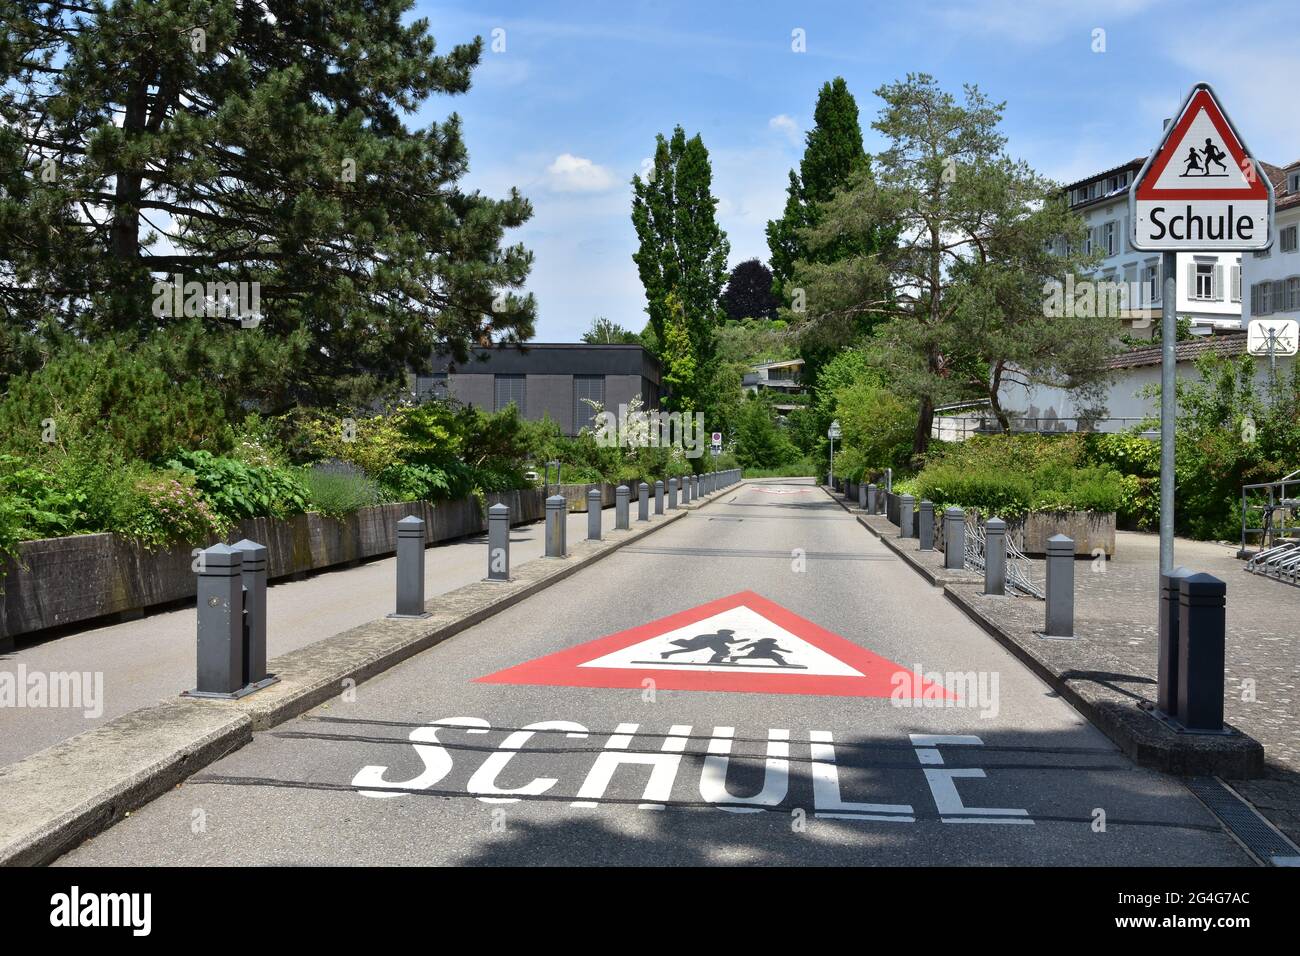 Warnschild auf einer Straße und vertikales Verkehrsschild auf dem Weg zur  Schule in deutscher Sprache in der Schweiz. Straßenschild ist rotes Dreieck  mit laufenden Kindern i Stockfotografie - Alamy